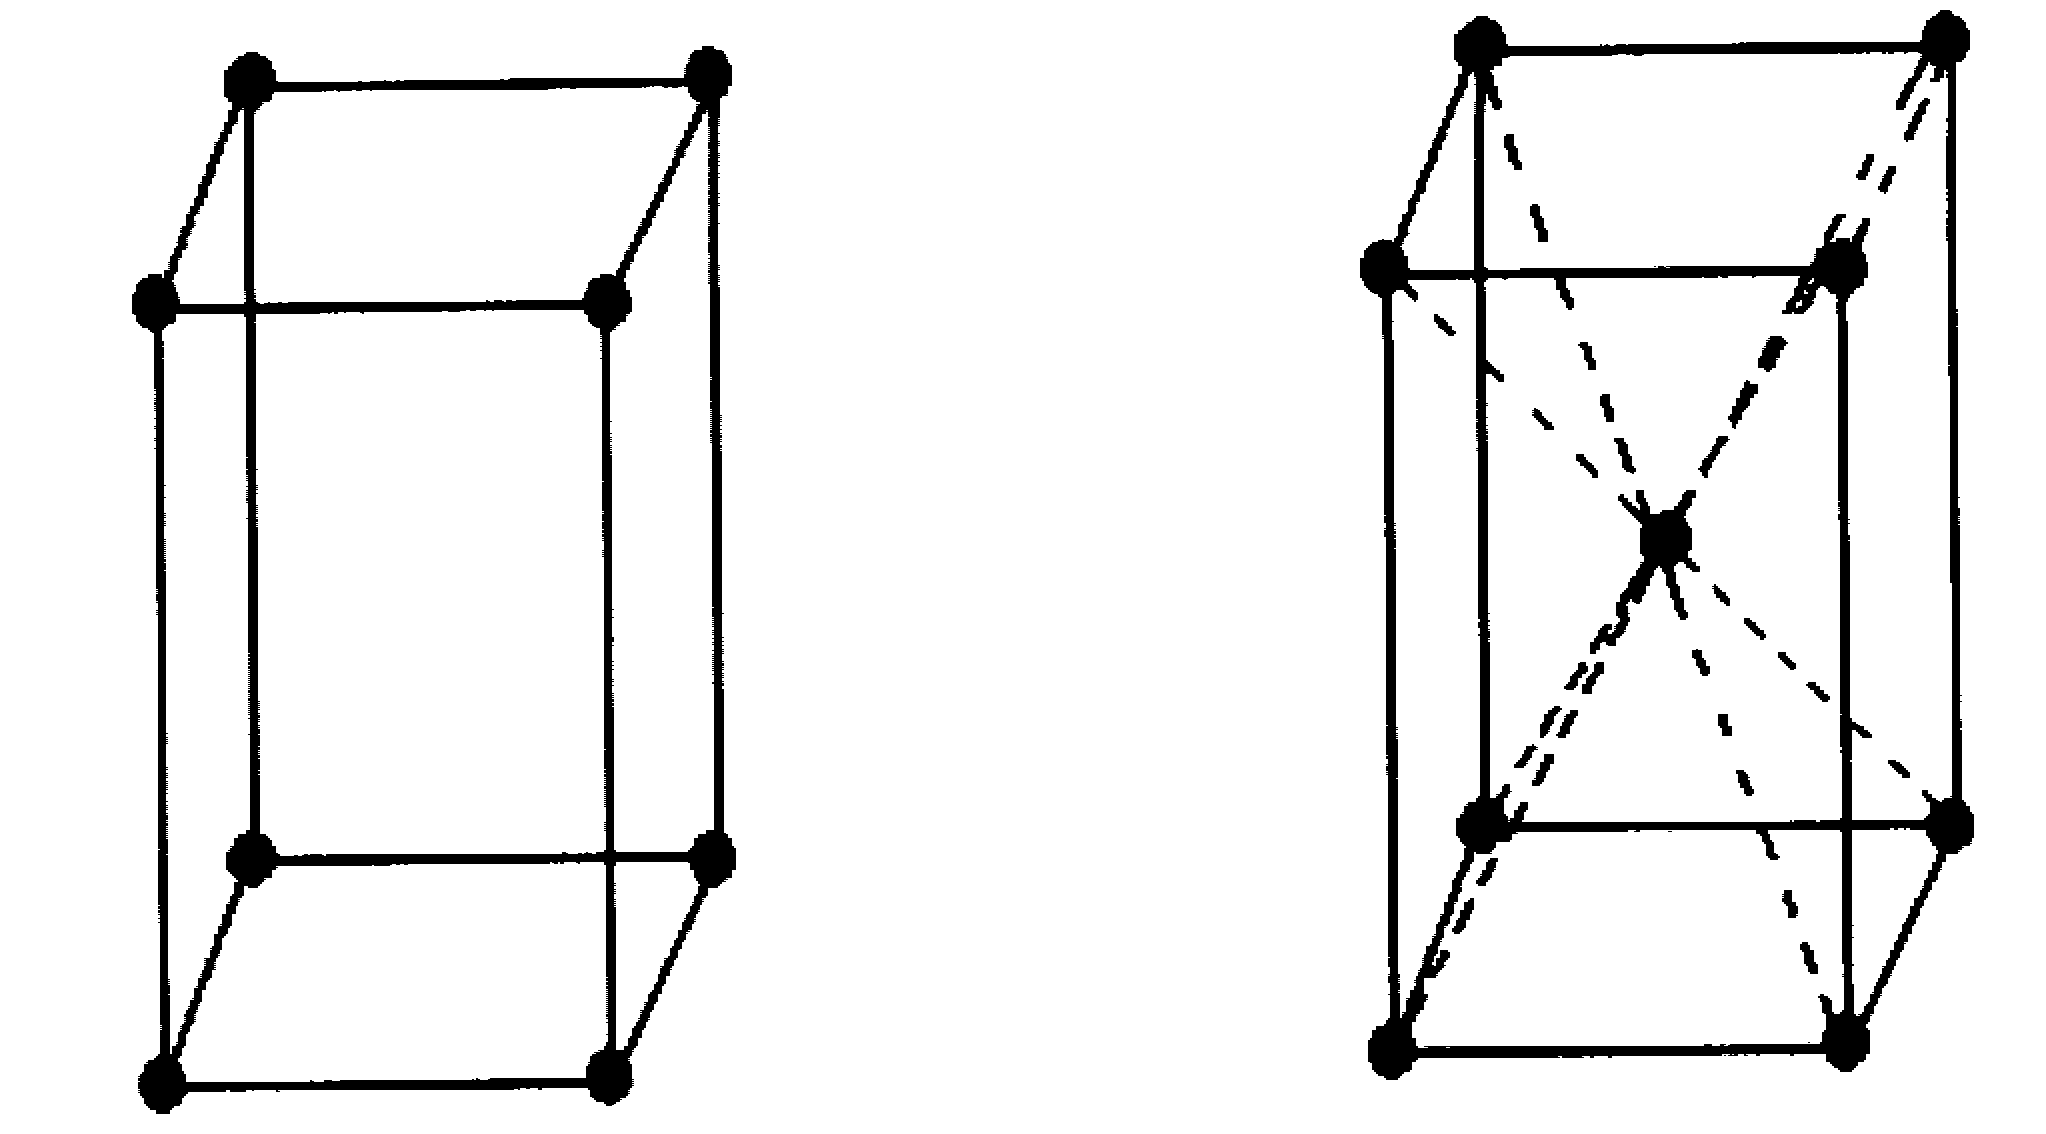 Тетрагональная структура решетки